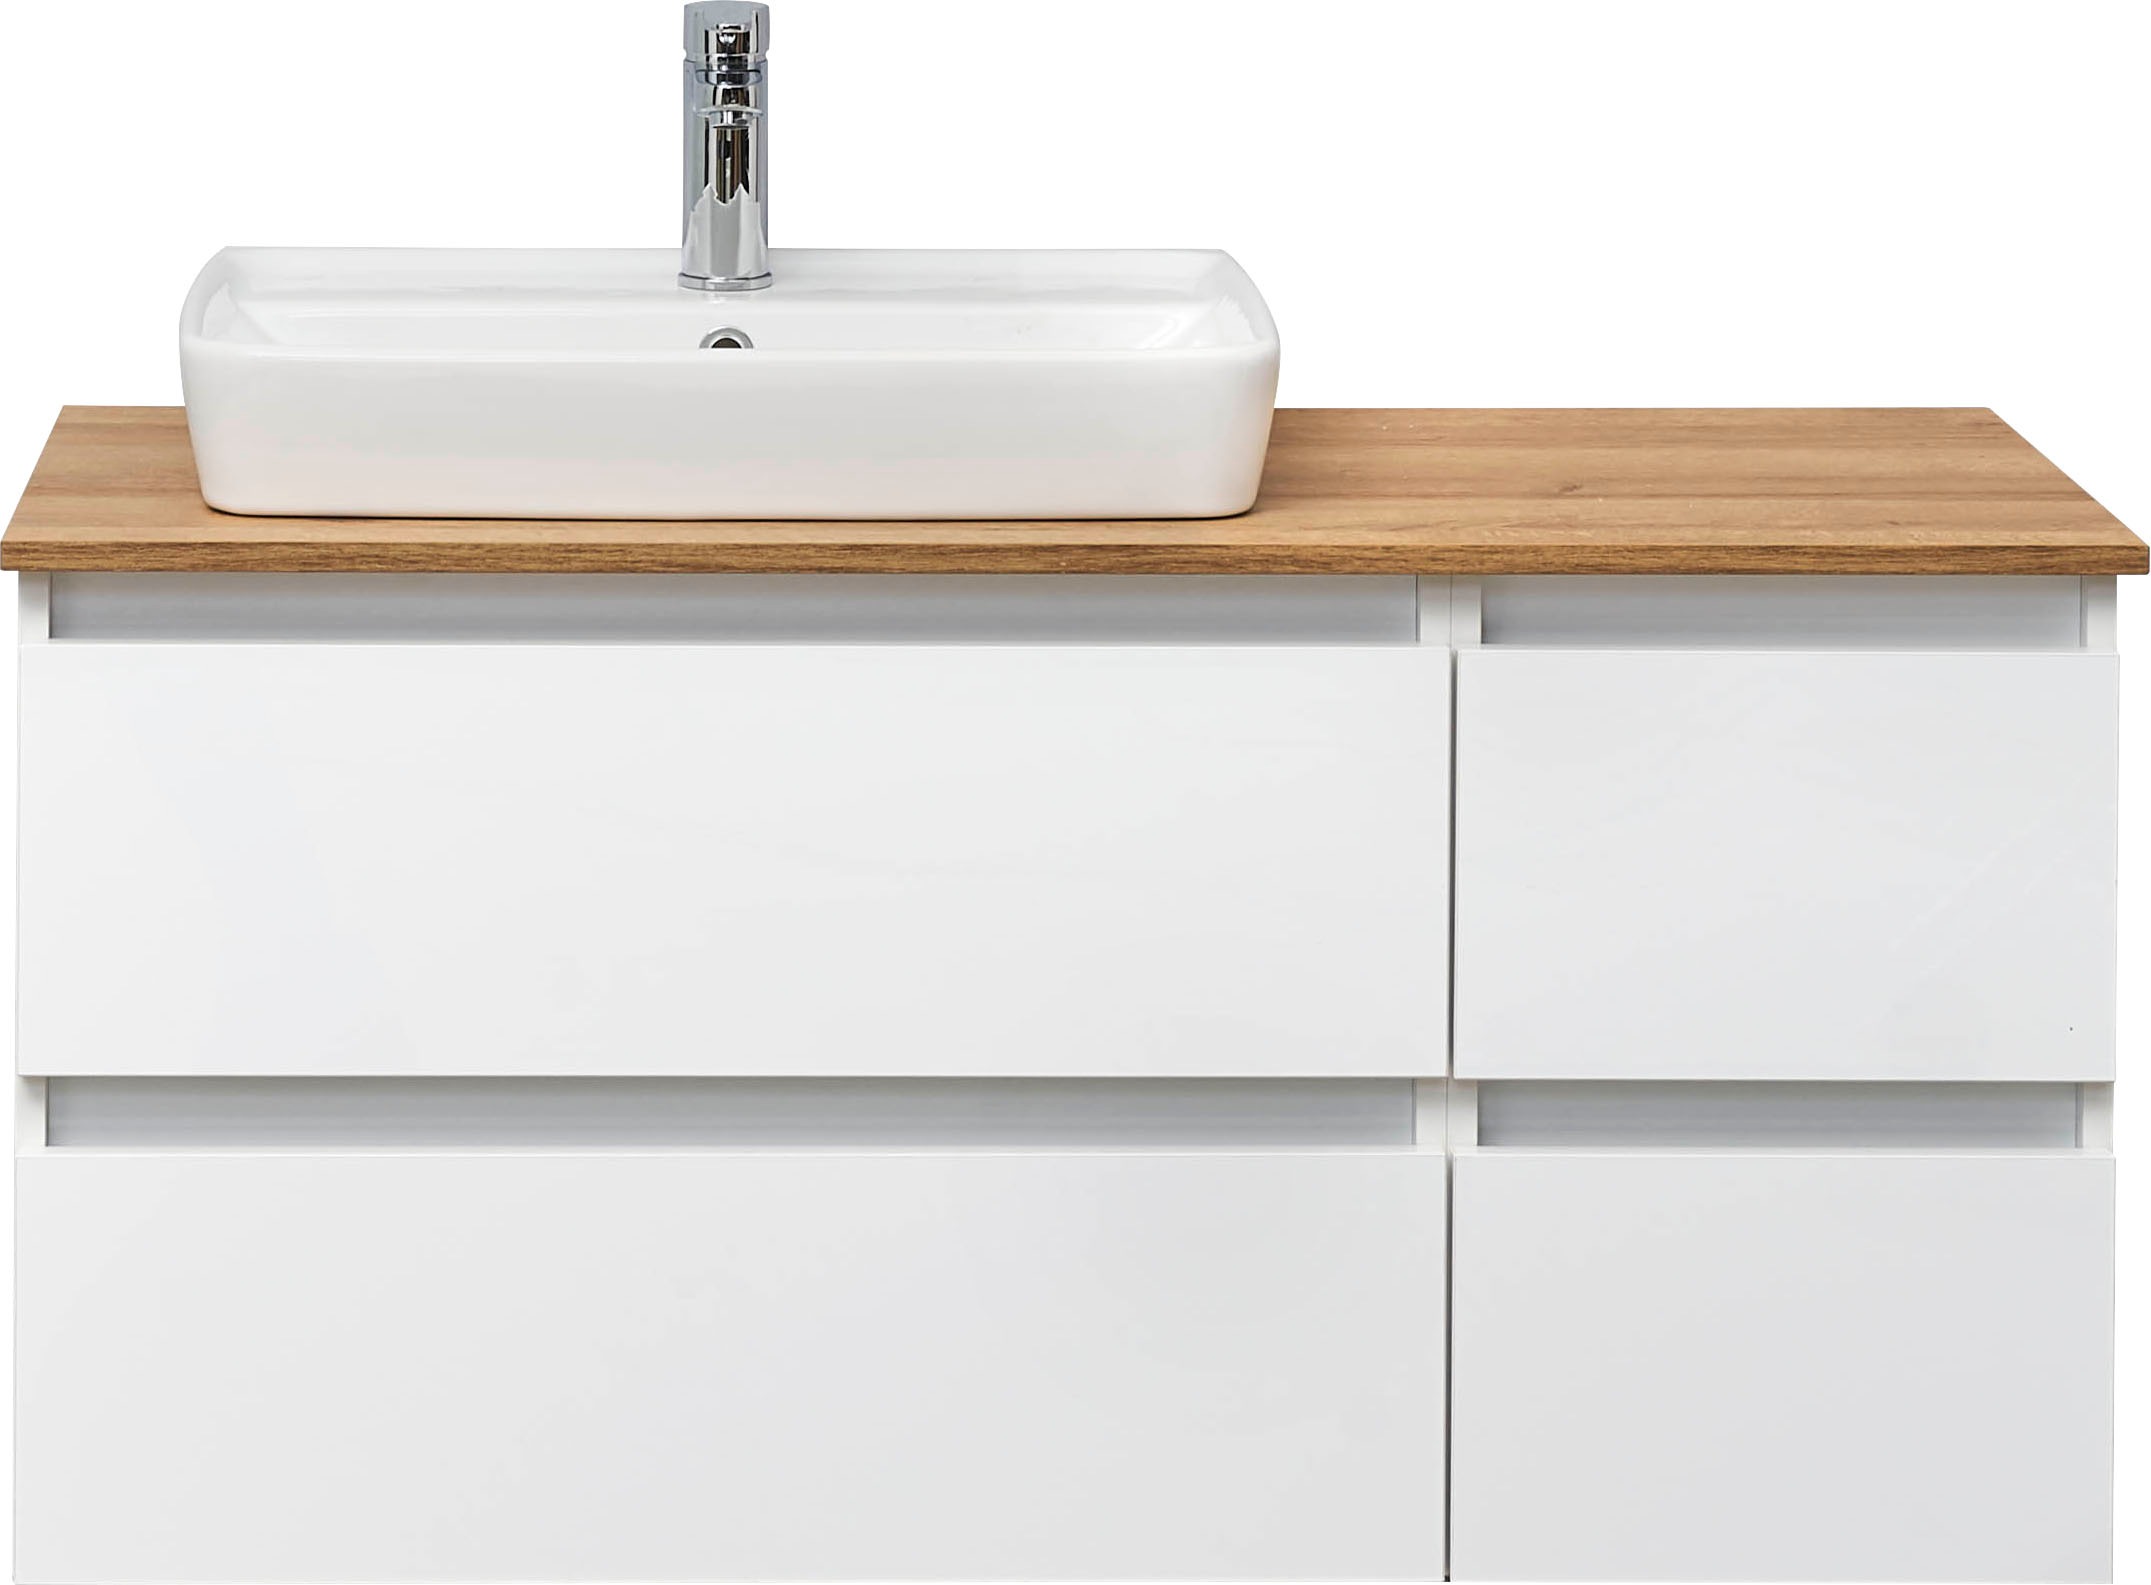 Saphir Waschtisch »Quickset 360 Waschplatz mit Keramik-Aufsatzbecken, wandhängend«, Waschtischplatte, 113 cm breit, Weiß Glanz, 4 Schubladen